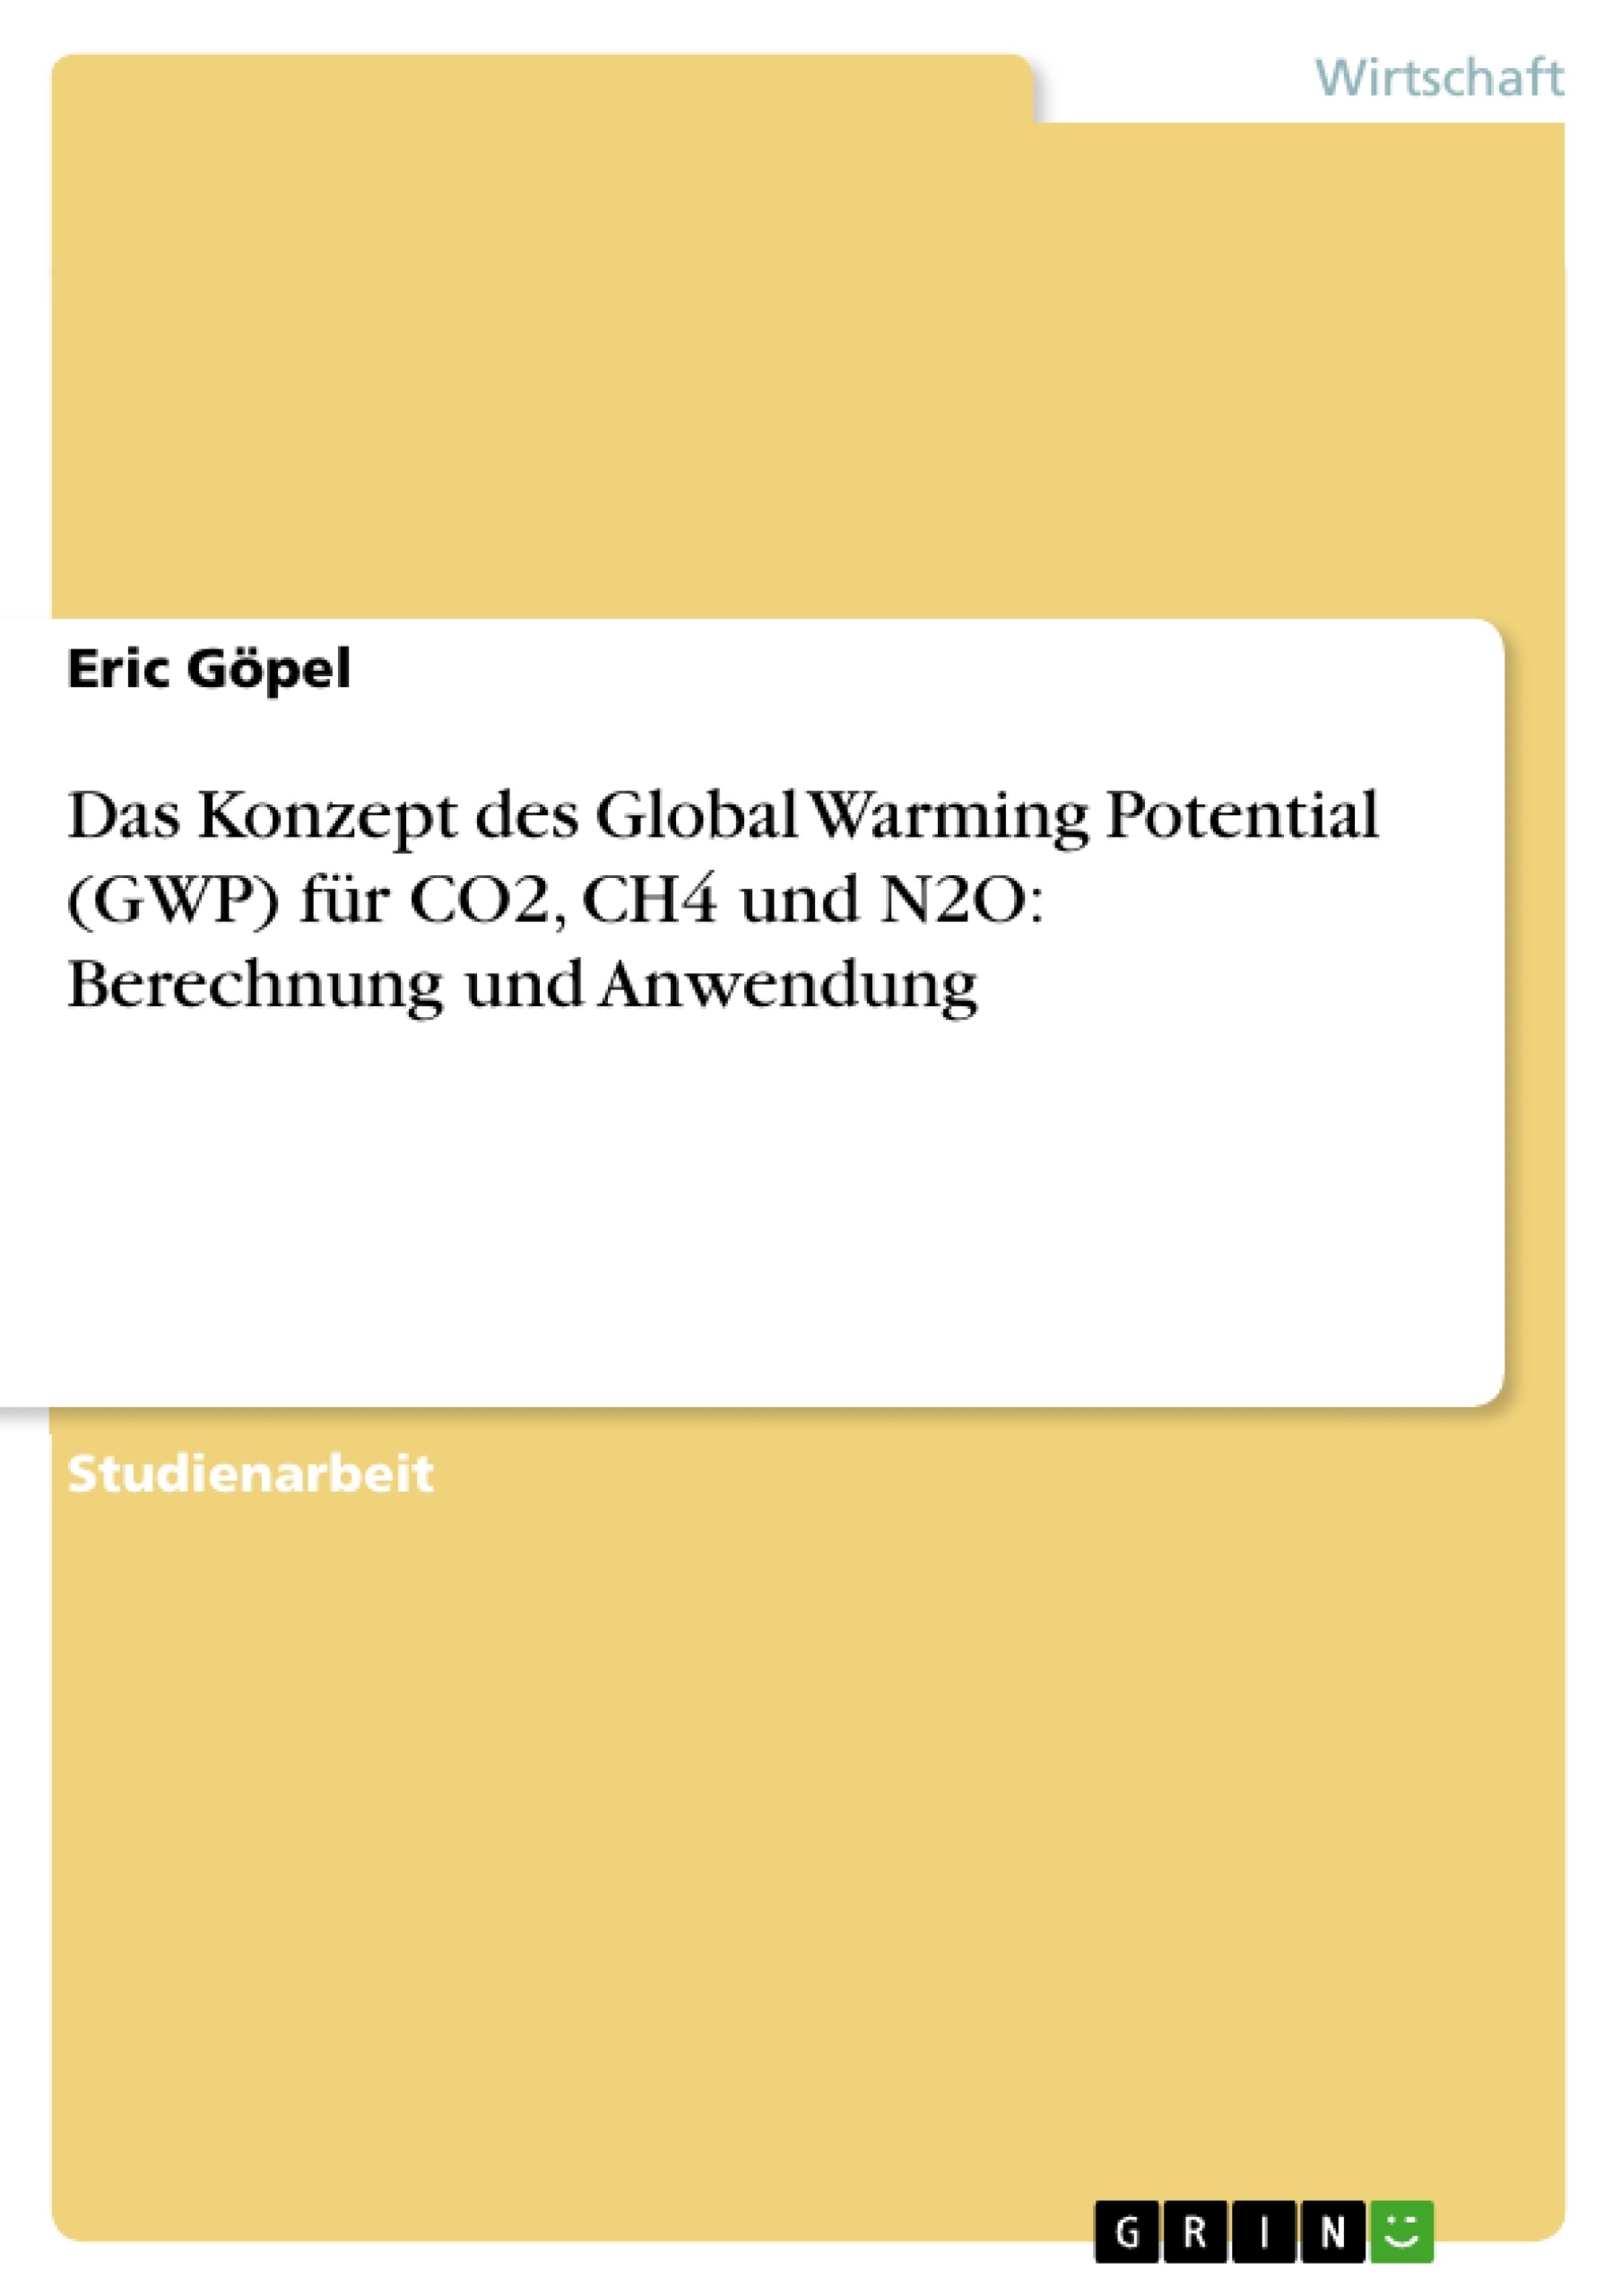 Título: Das Konzept des Global Warming Potential (GWP) für CO2, CH4 und N2O: Berechnung und Anwendung